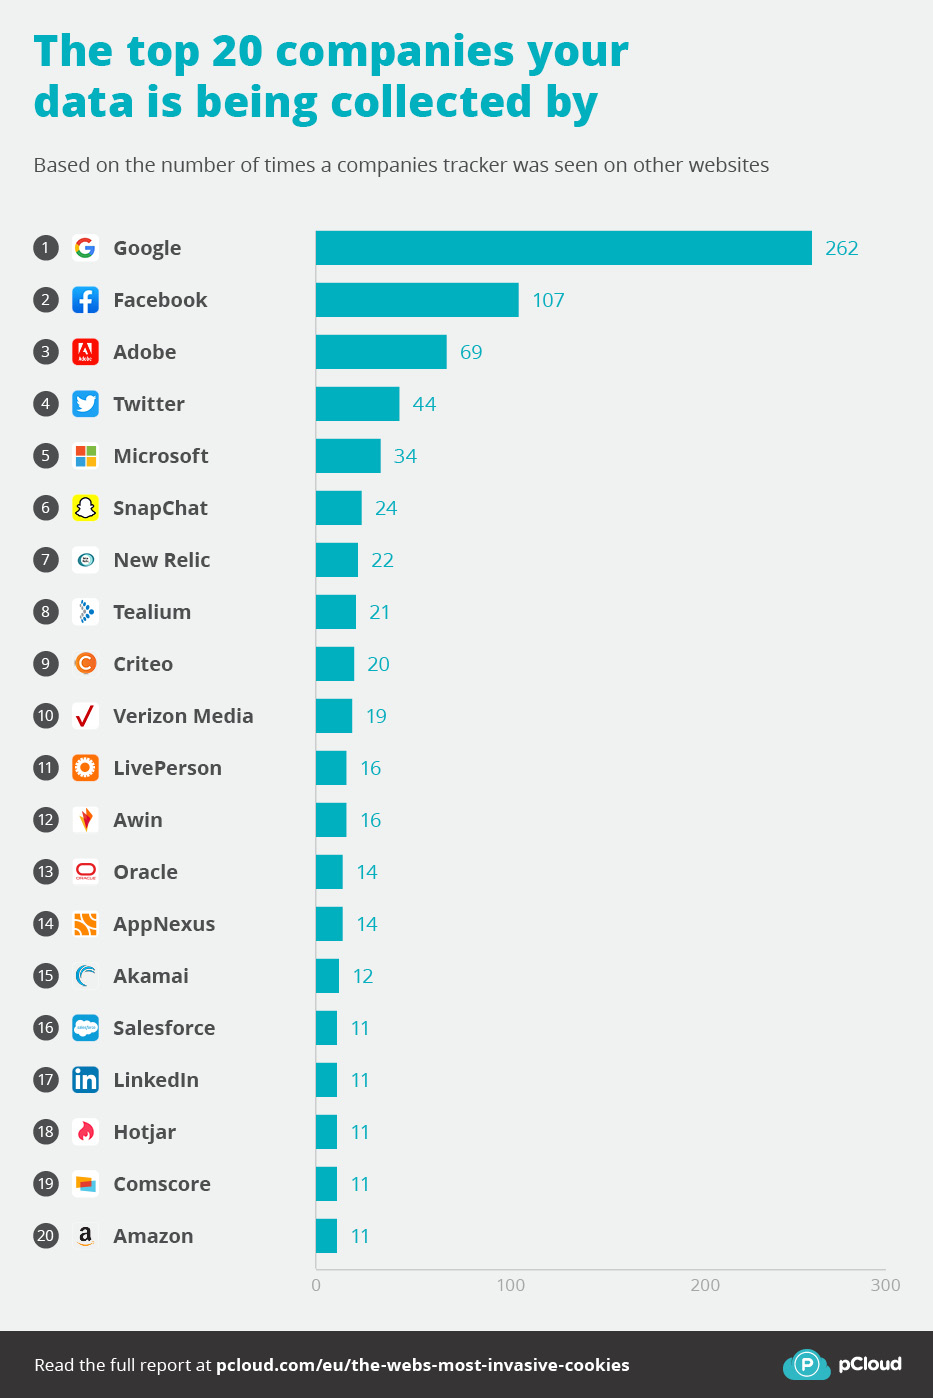 Hvilket selskap eier mest data?